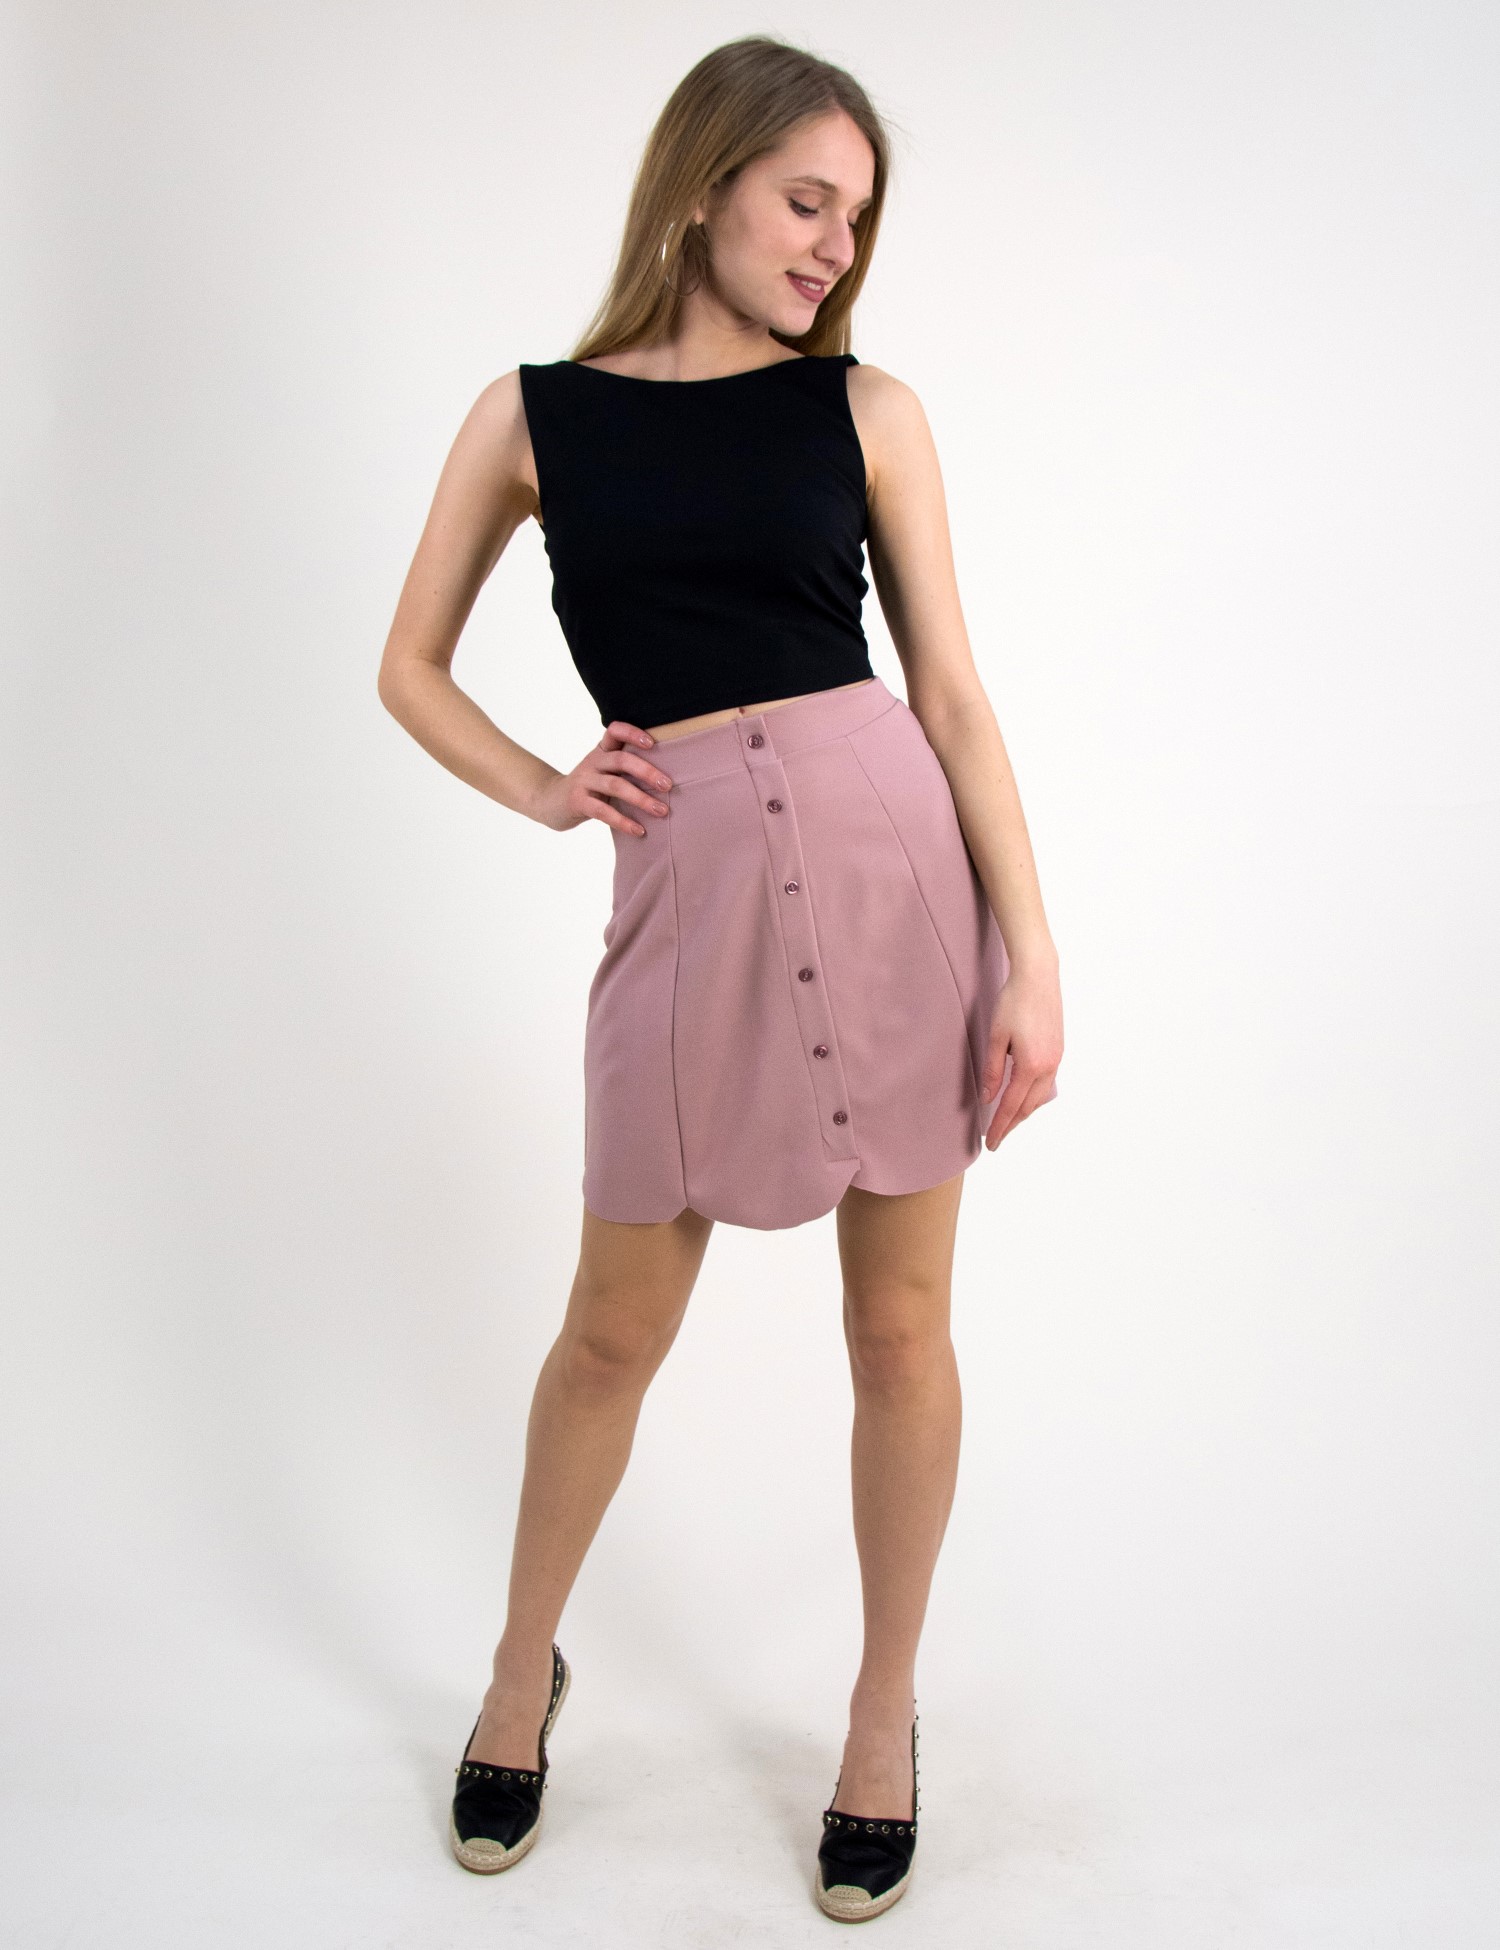 Γυναικεία μίνι υφασμάτινη φούστα So Sexy ροζ με κουμπά 12620F